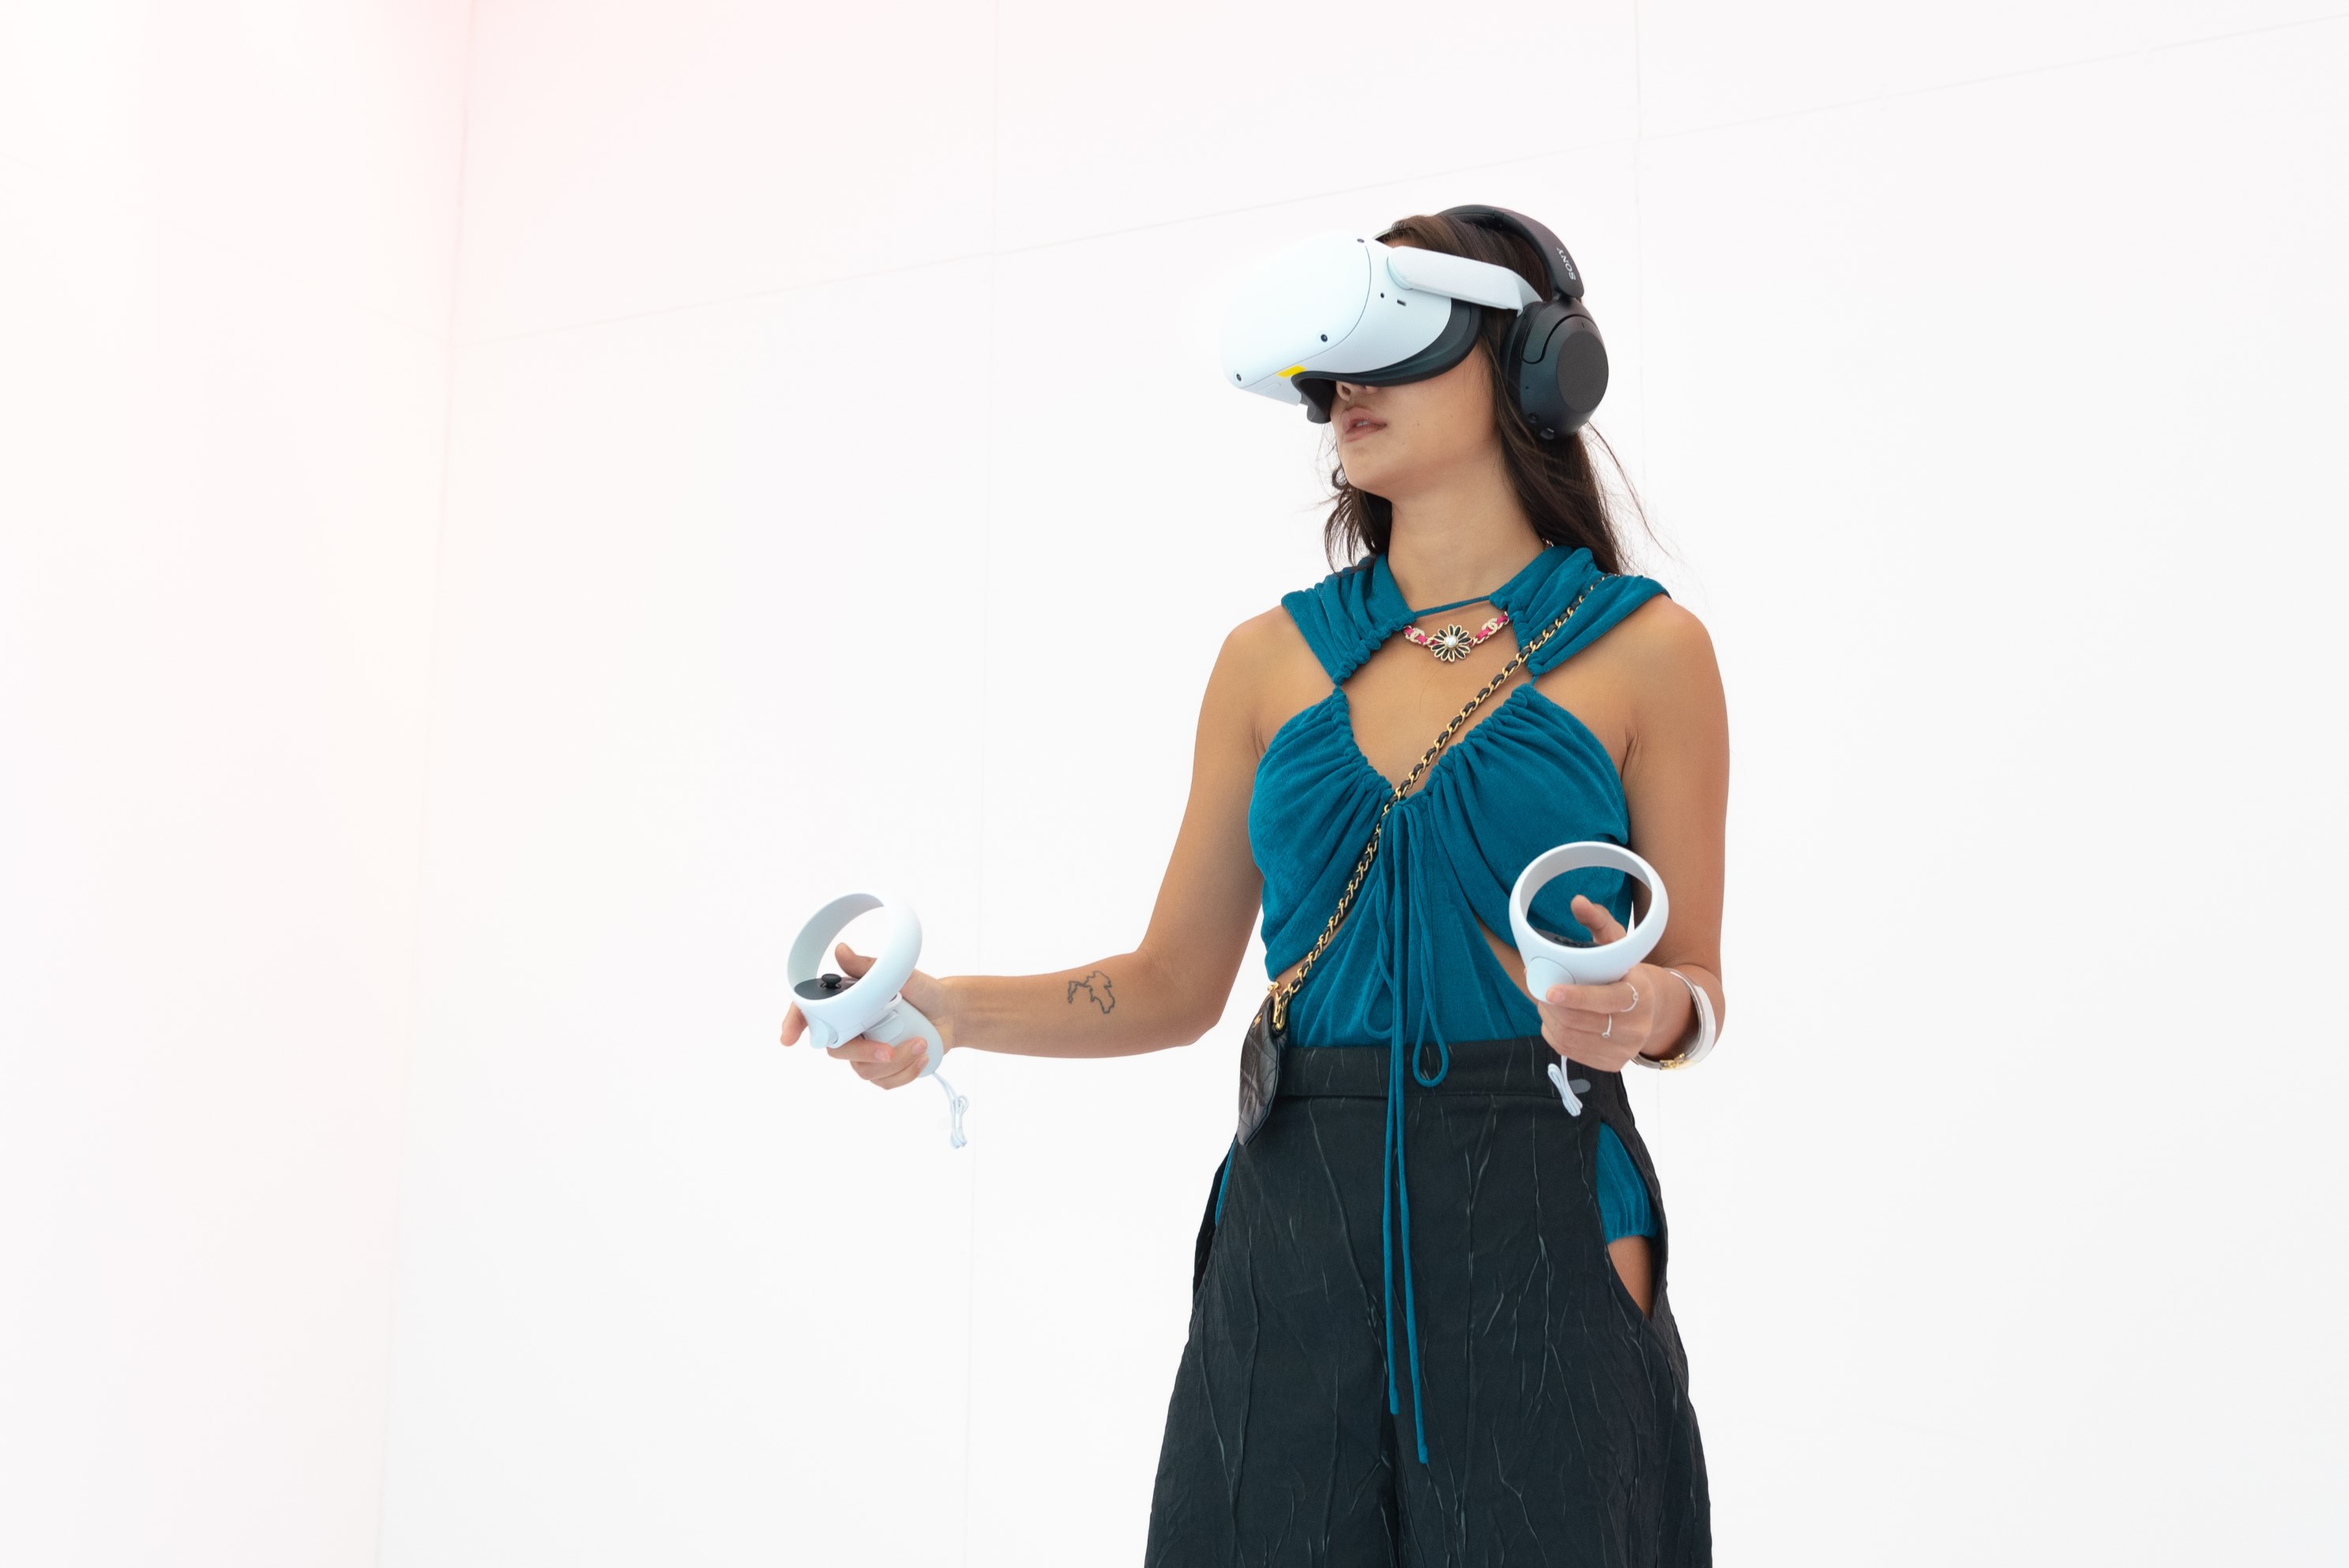 ห้างเซ็นทรัล คอลแลบอาร์ติสต์ดัง “แพรว-กวิตา” เปิดงาน VOIDSCAPE สะท้อนปัญหาแรงงานและสิ่งแวดล้อมผ่านงานศิลป์ในรูปแบบ Interactive VR